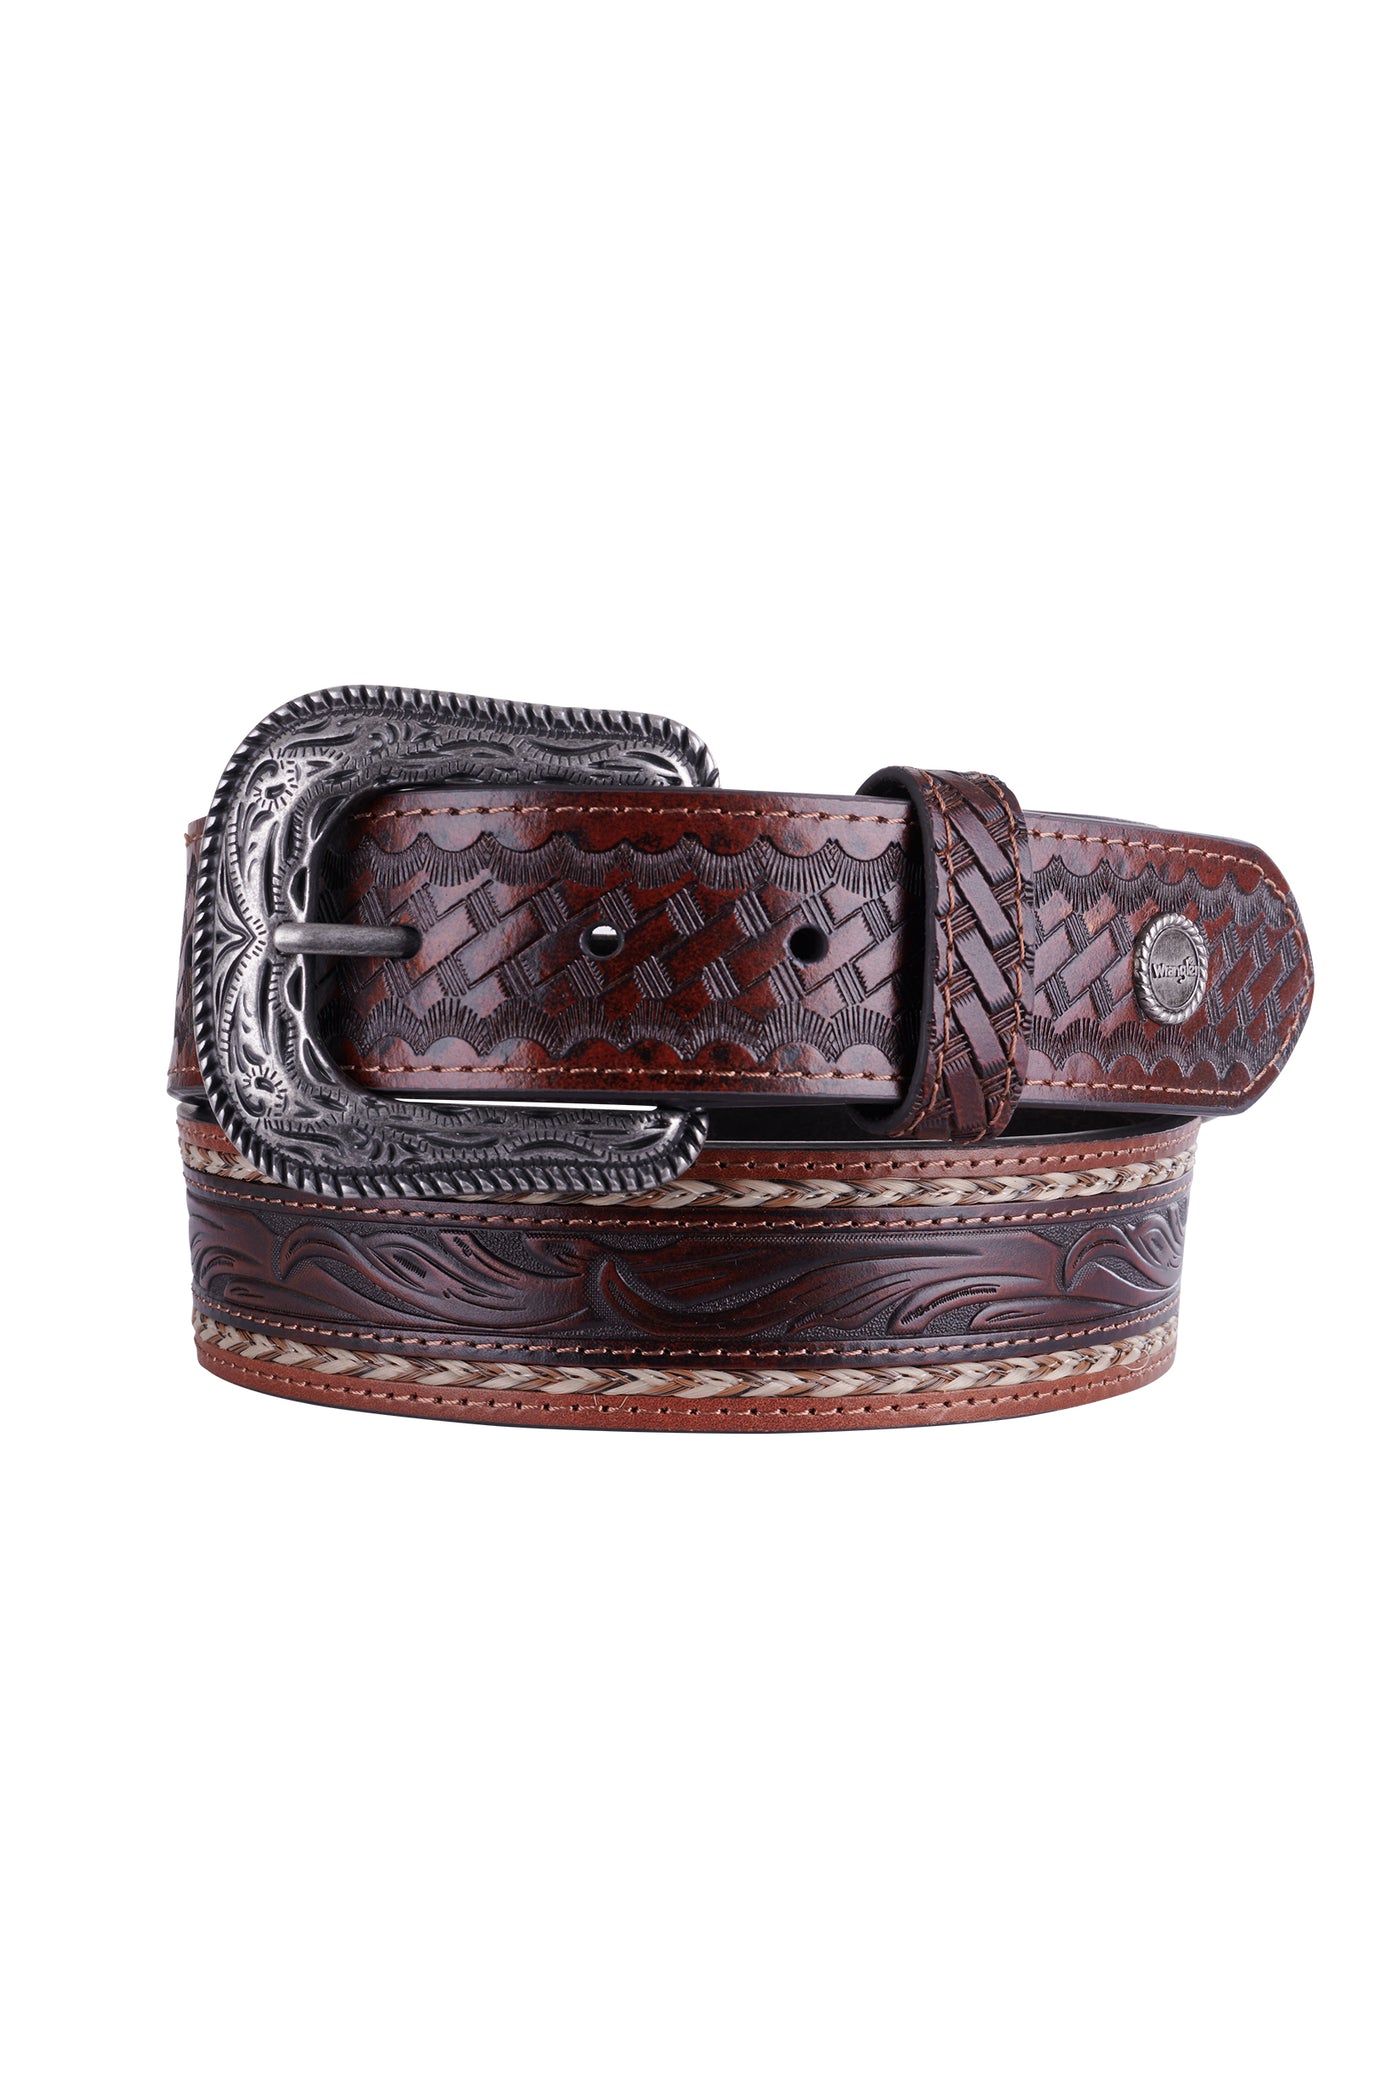 Wrangler Carden Tan Leather Belt